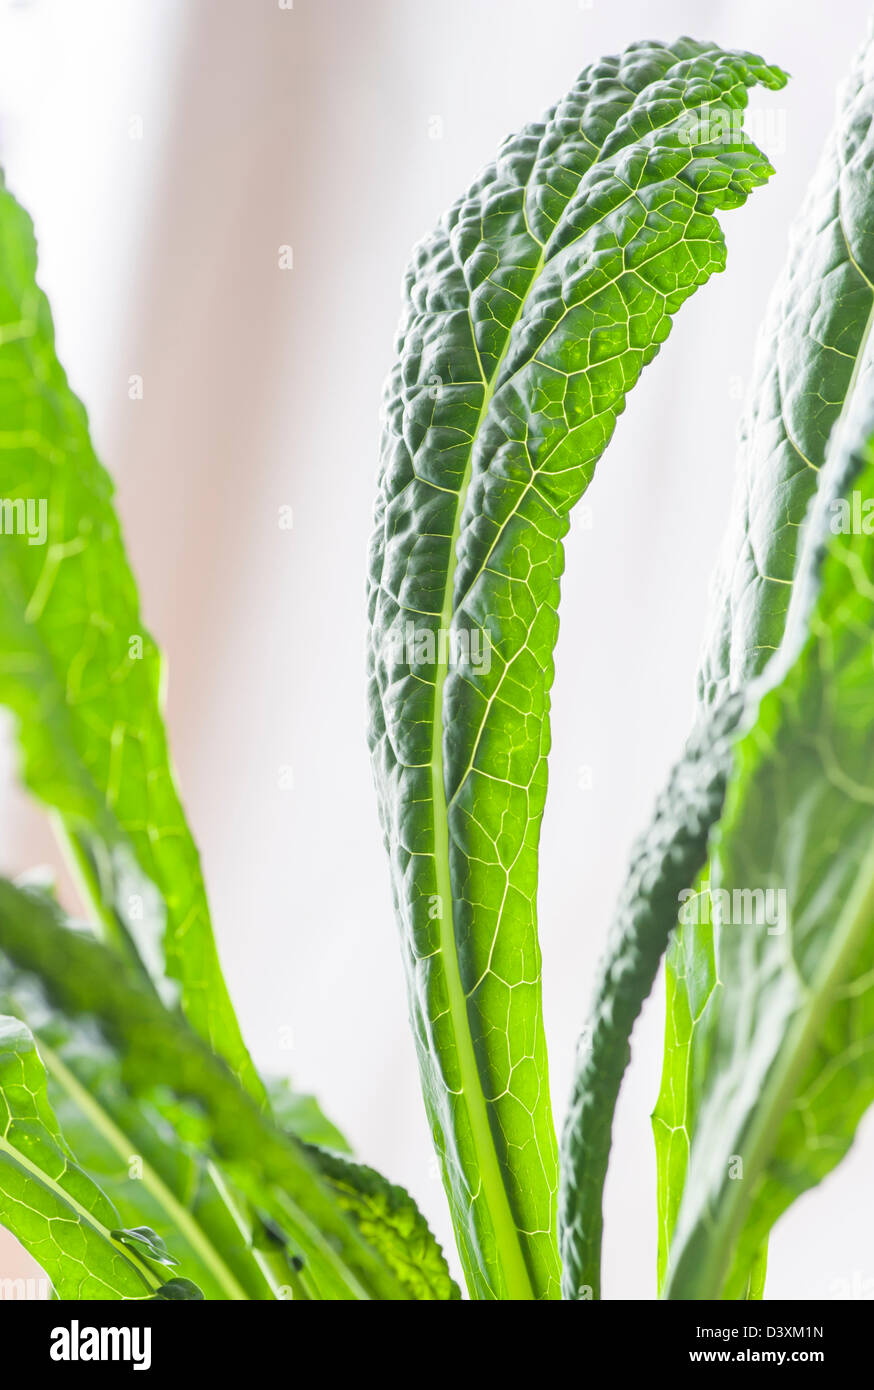 Nahaufnahme von grünen Blättern auf einer Colewort-Anlage Stockfoto